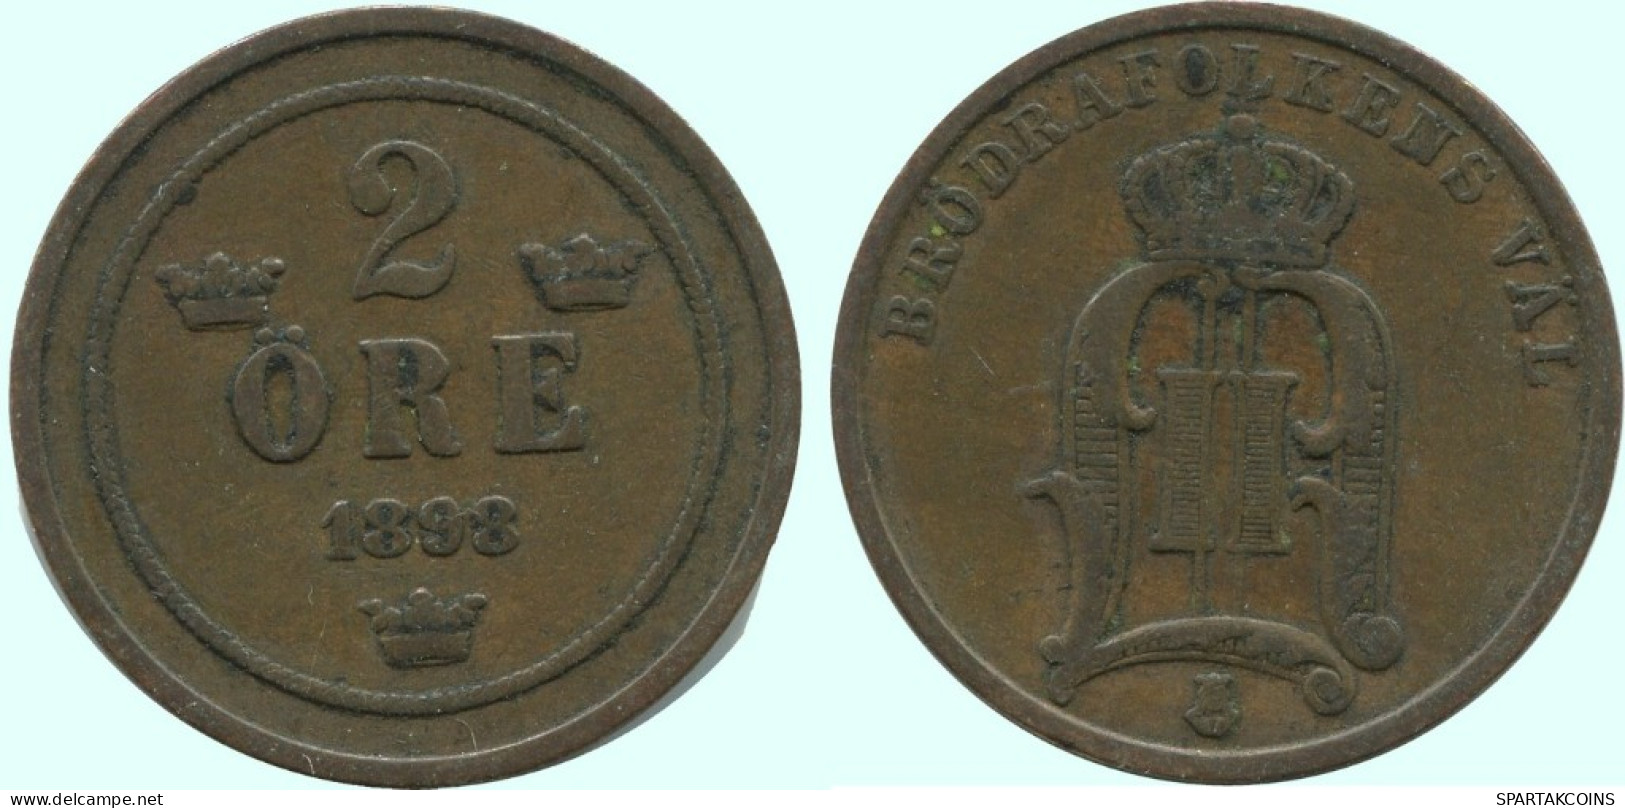 2 ORE 1898 SWEDEN Coin #AC866.2.U.A - Suède